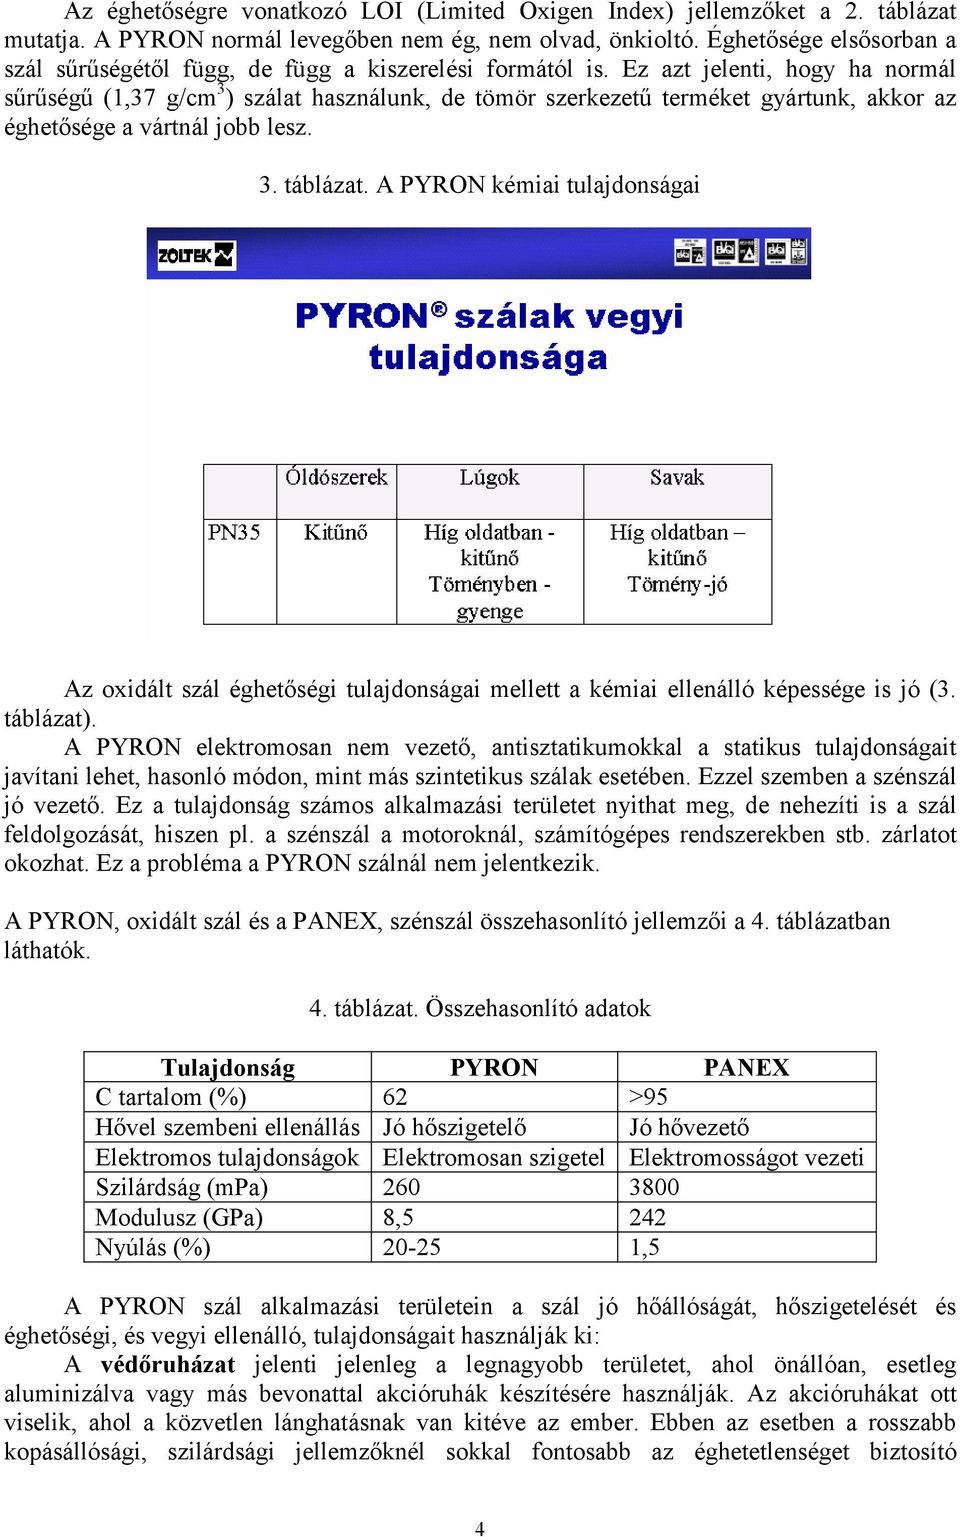 A Pyron oxidált szál a mőszaki textíliák egyik fontos alapanyaga - PDF Free  Download